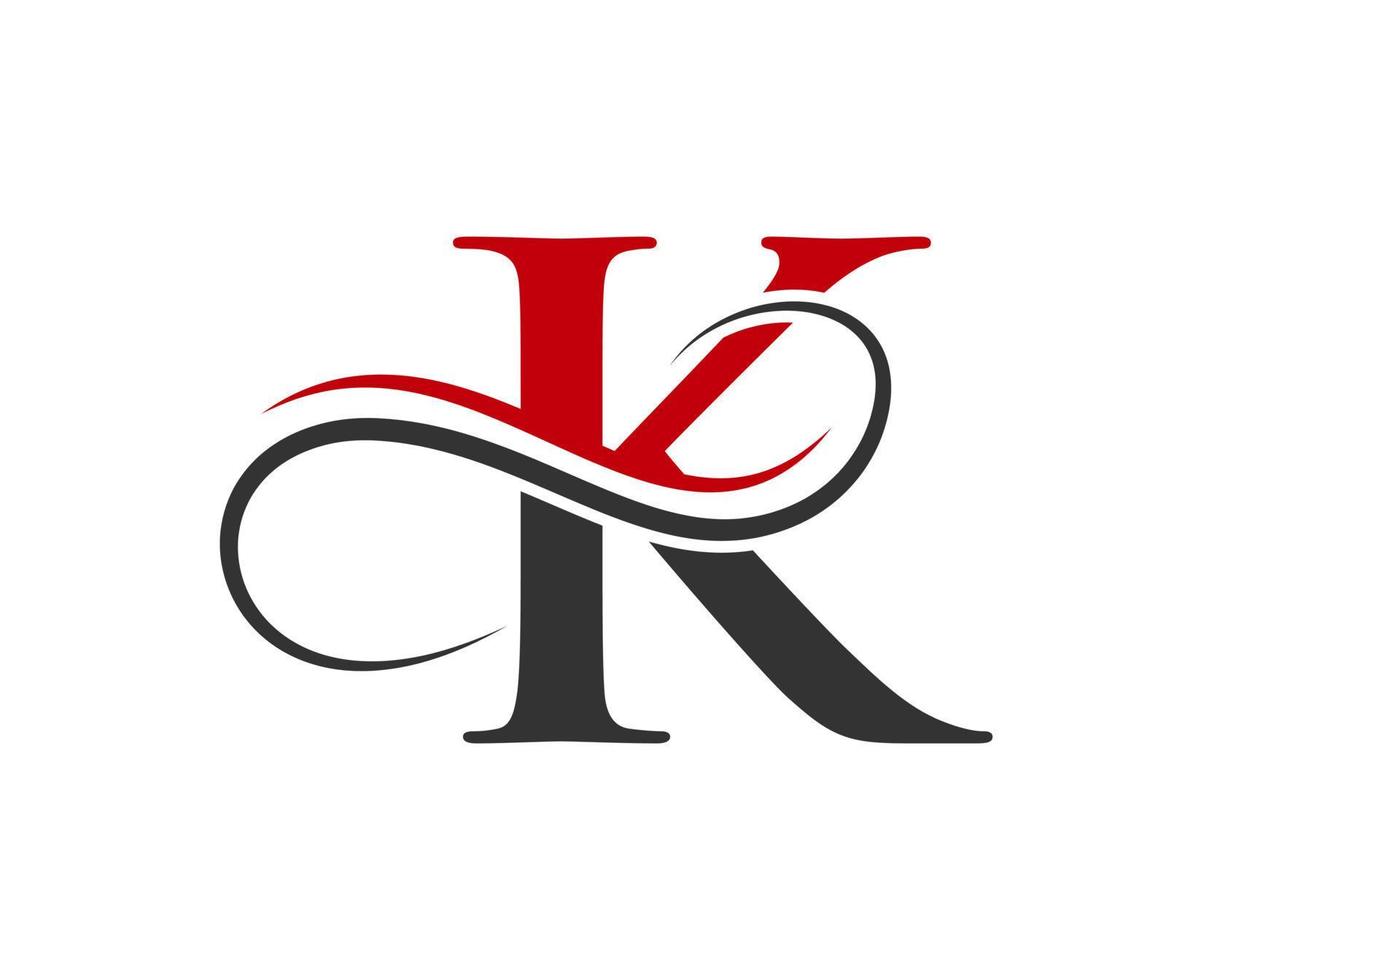 modelo de design de logotipo de letra inicial k vetor